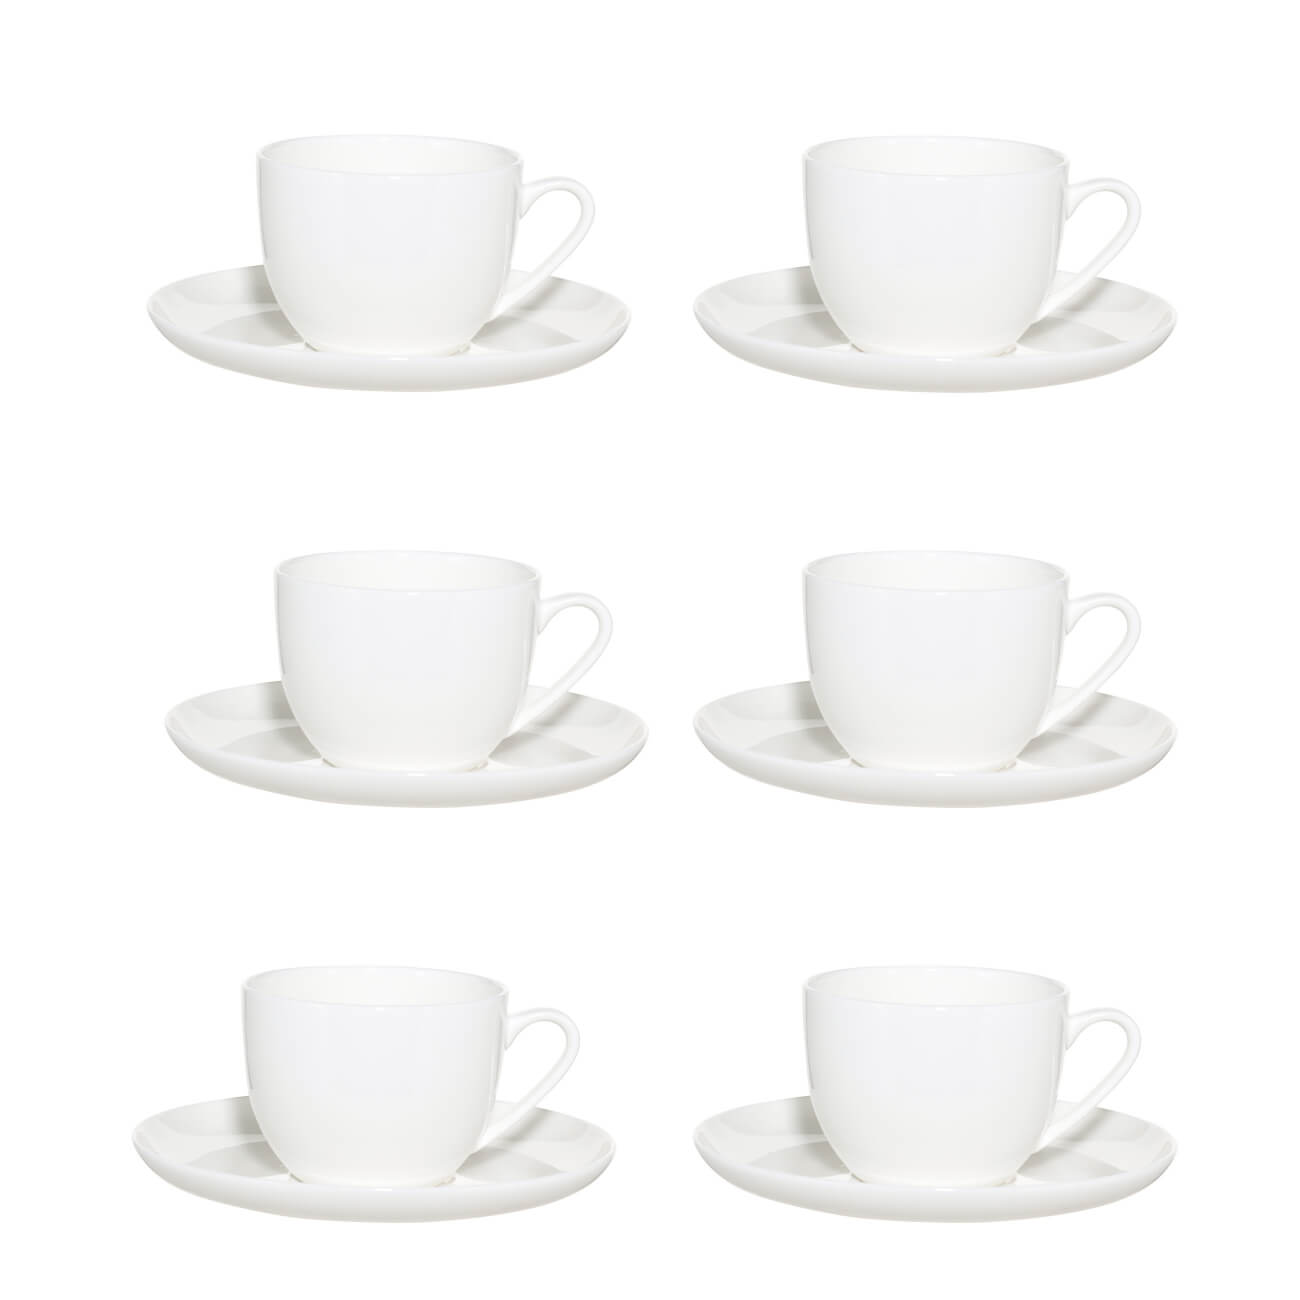 Пара чайная, 6 перс, 12 пр, 250 мл, фарфор F, белая, Ideal white чашка чайная tudor royal circle 200 мл